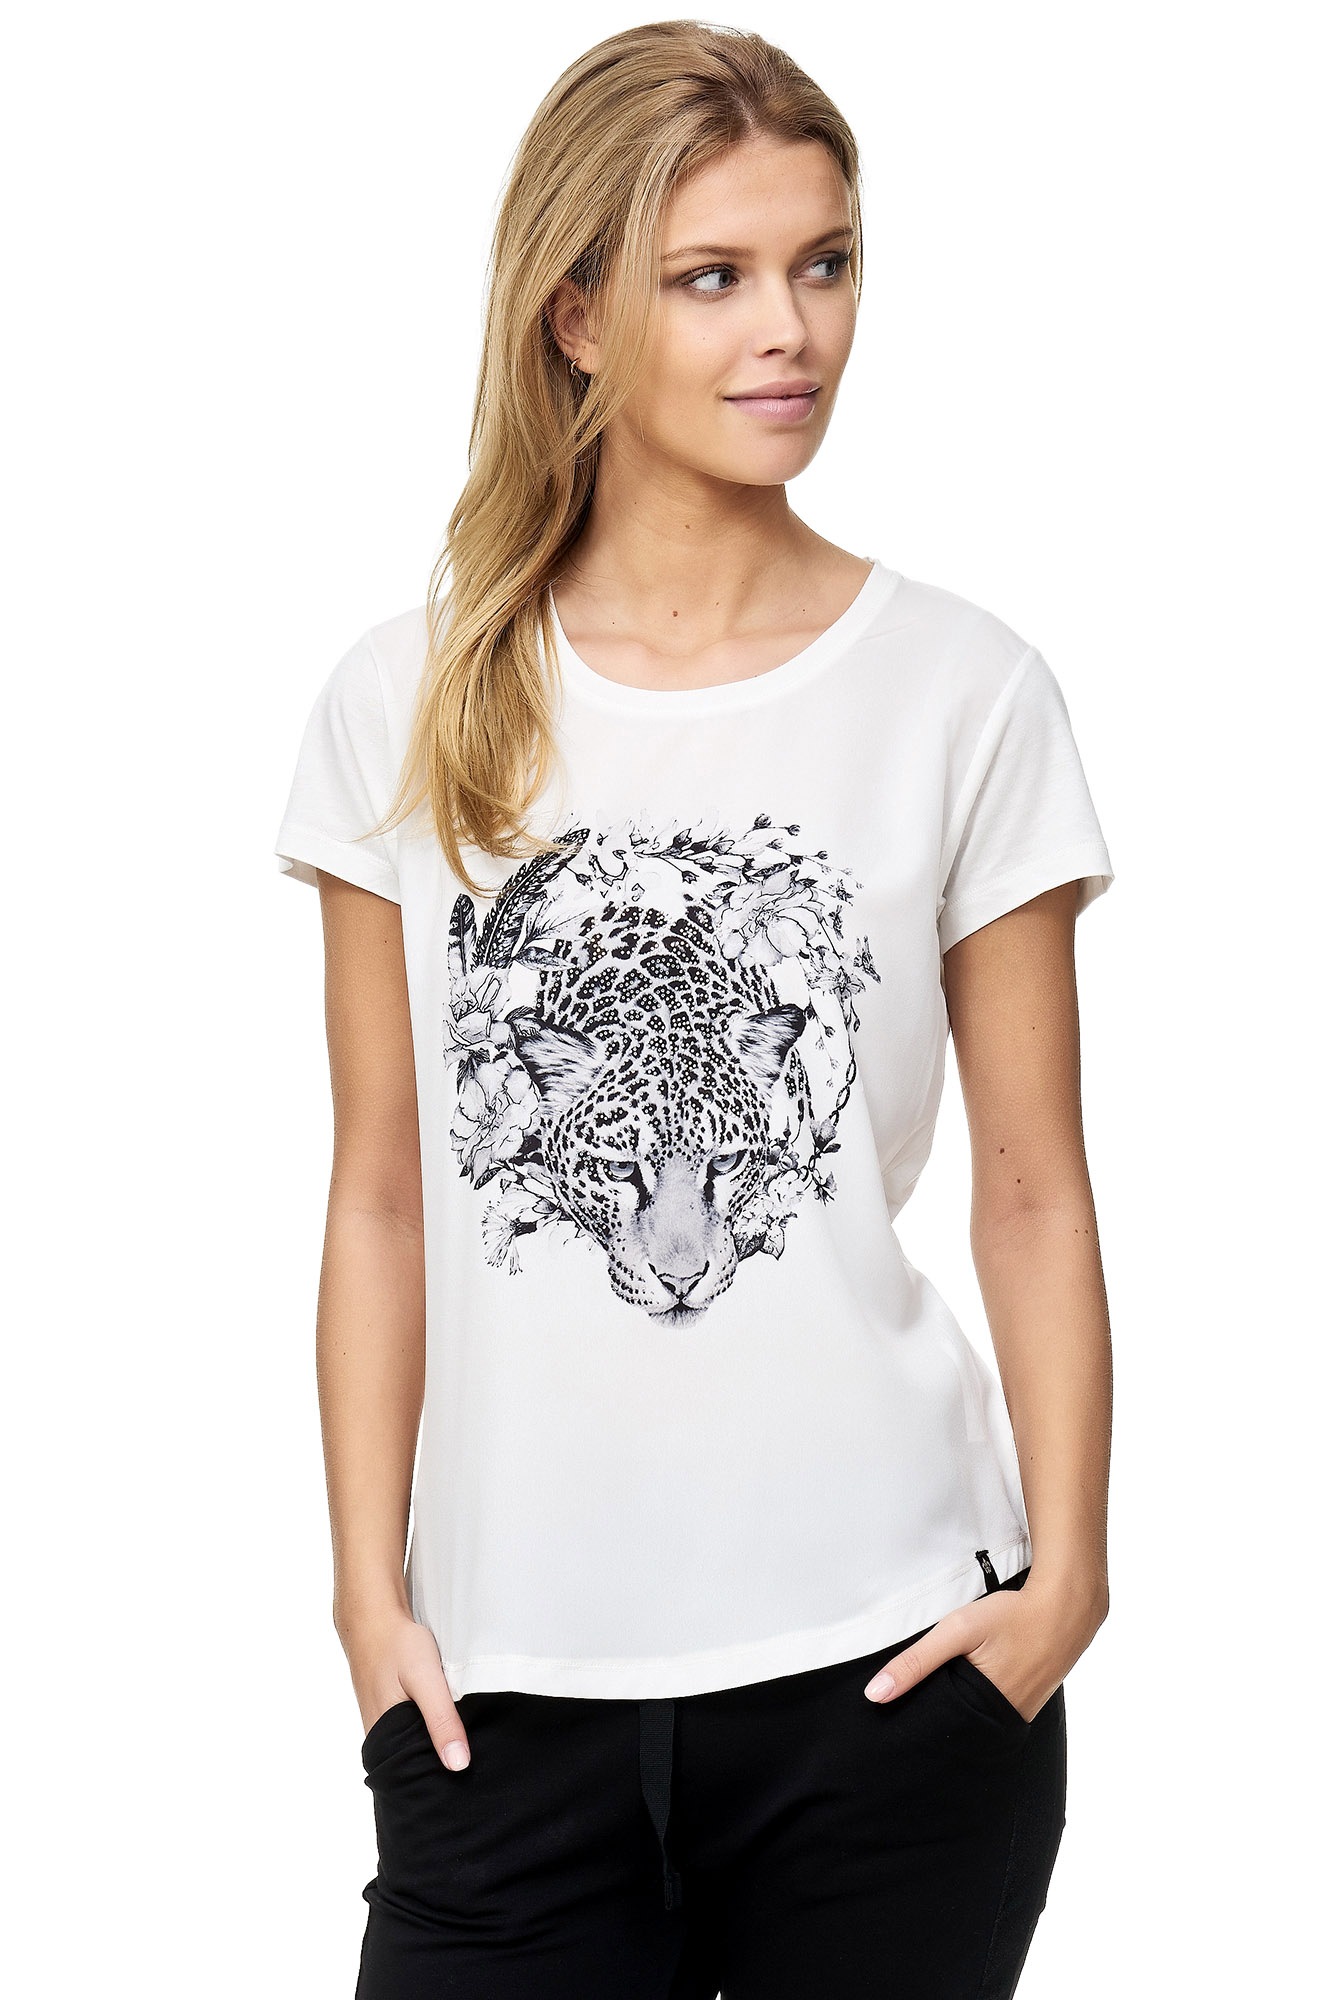 mit T-Shirt, Decay shoppen Leoparden-Aufdruck